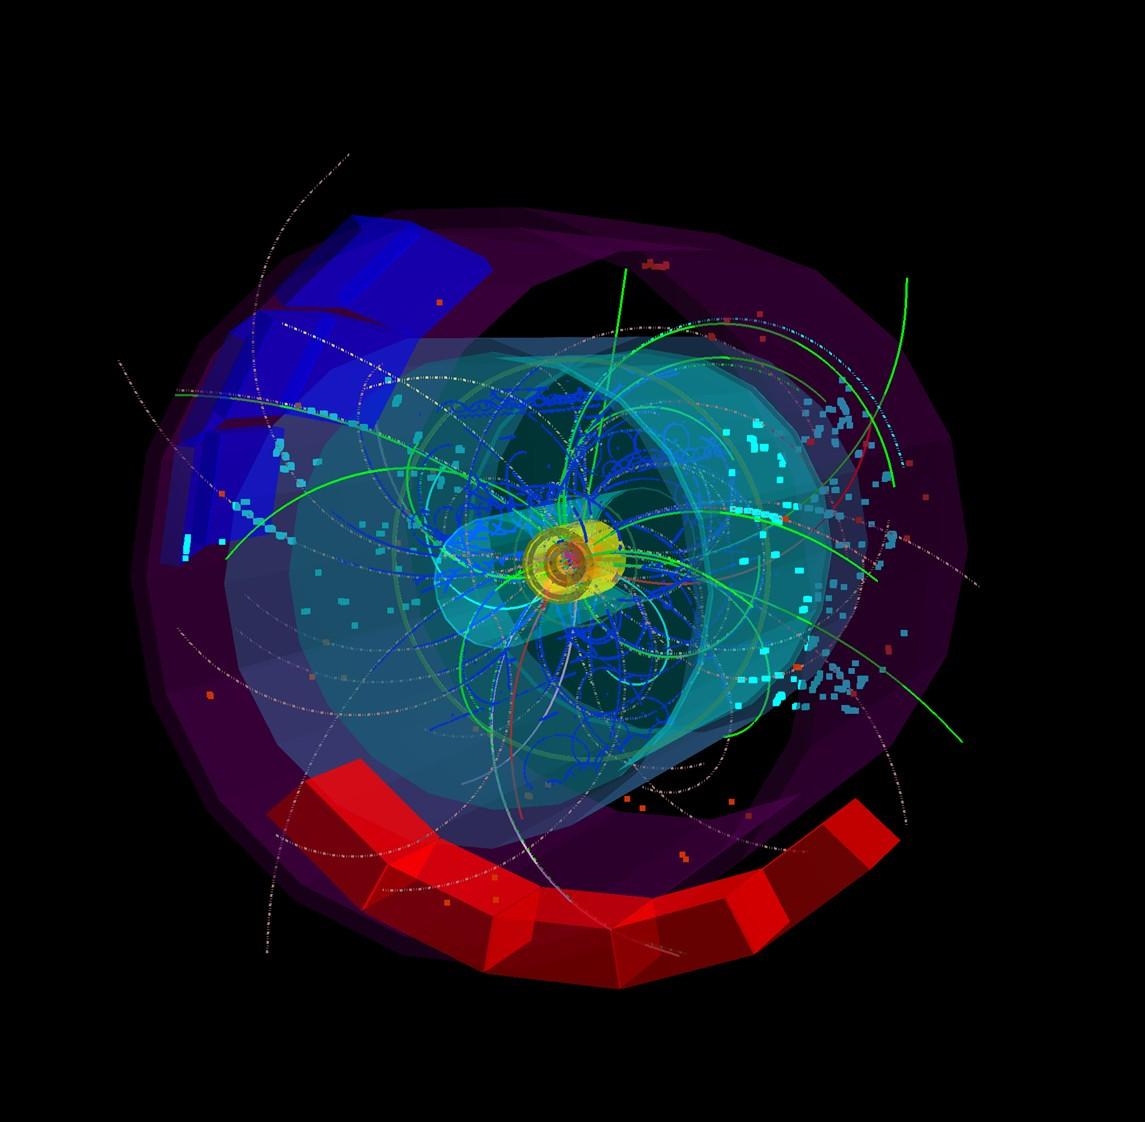 El LHC obtiene indicios de la partícula elemental más masiva por primera vez en Europa